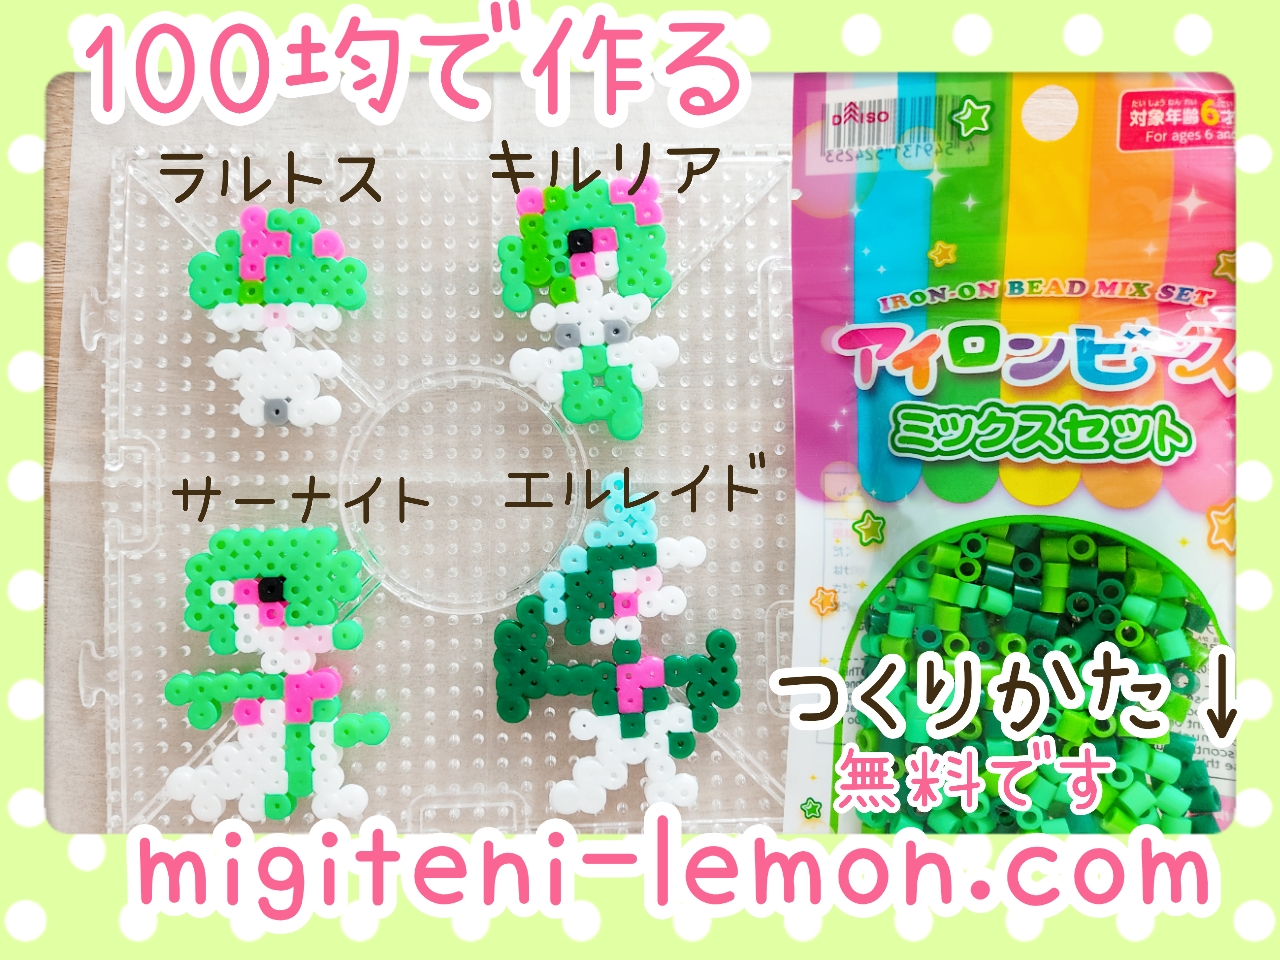 erureido-gallade-kirulia-kirlia-rarutosu-ralts-kawaii-green-pokemon-handmade-iron-beads-free-zuan-daiso-square-small